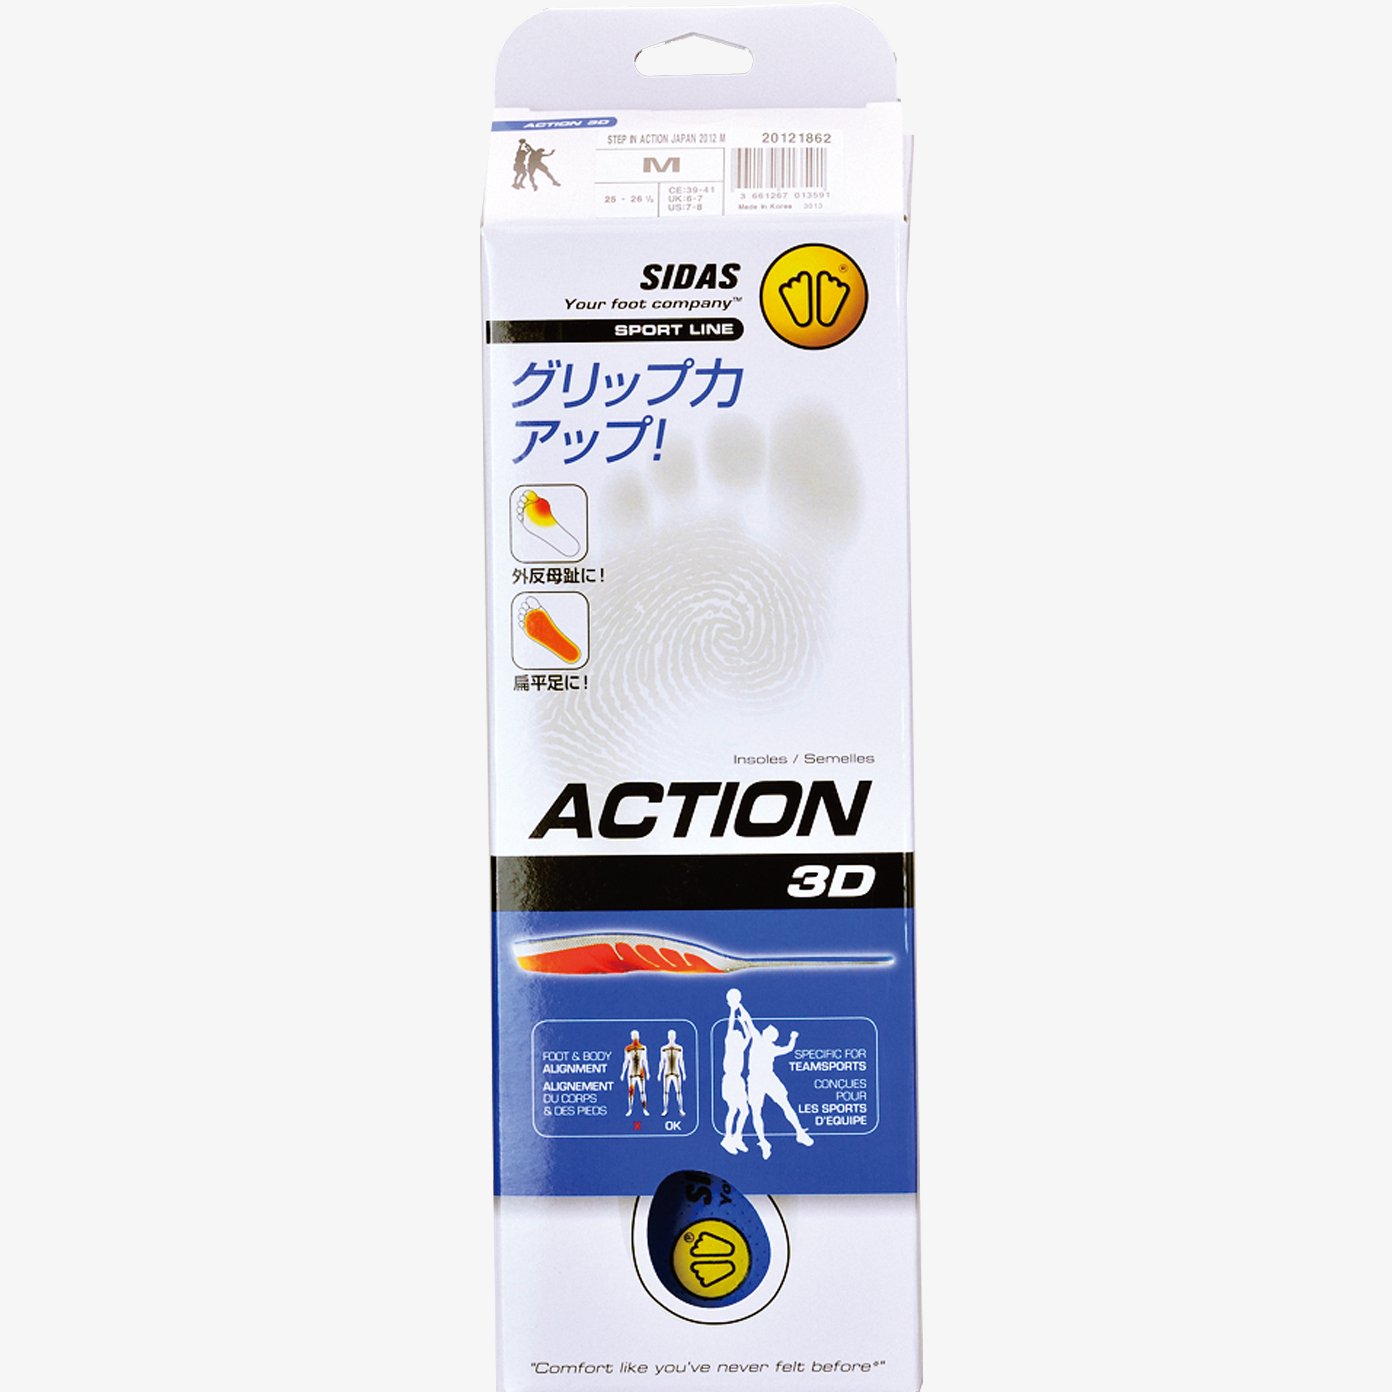 アクション3D（ACTION 3D）-シダスジャパン公式オンラインショップ